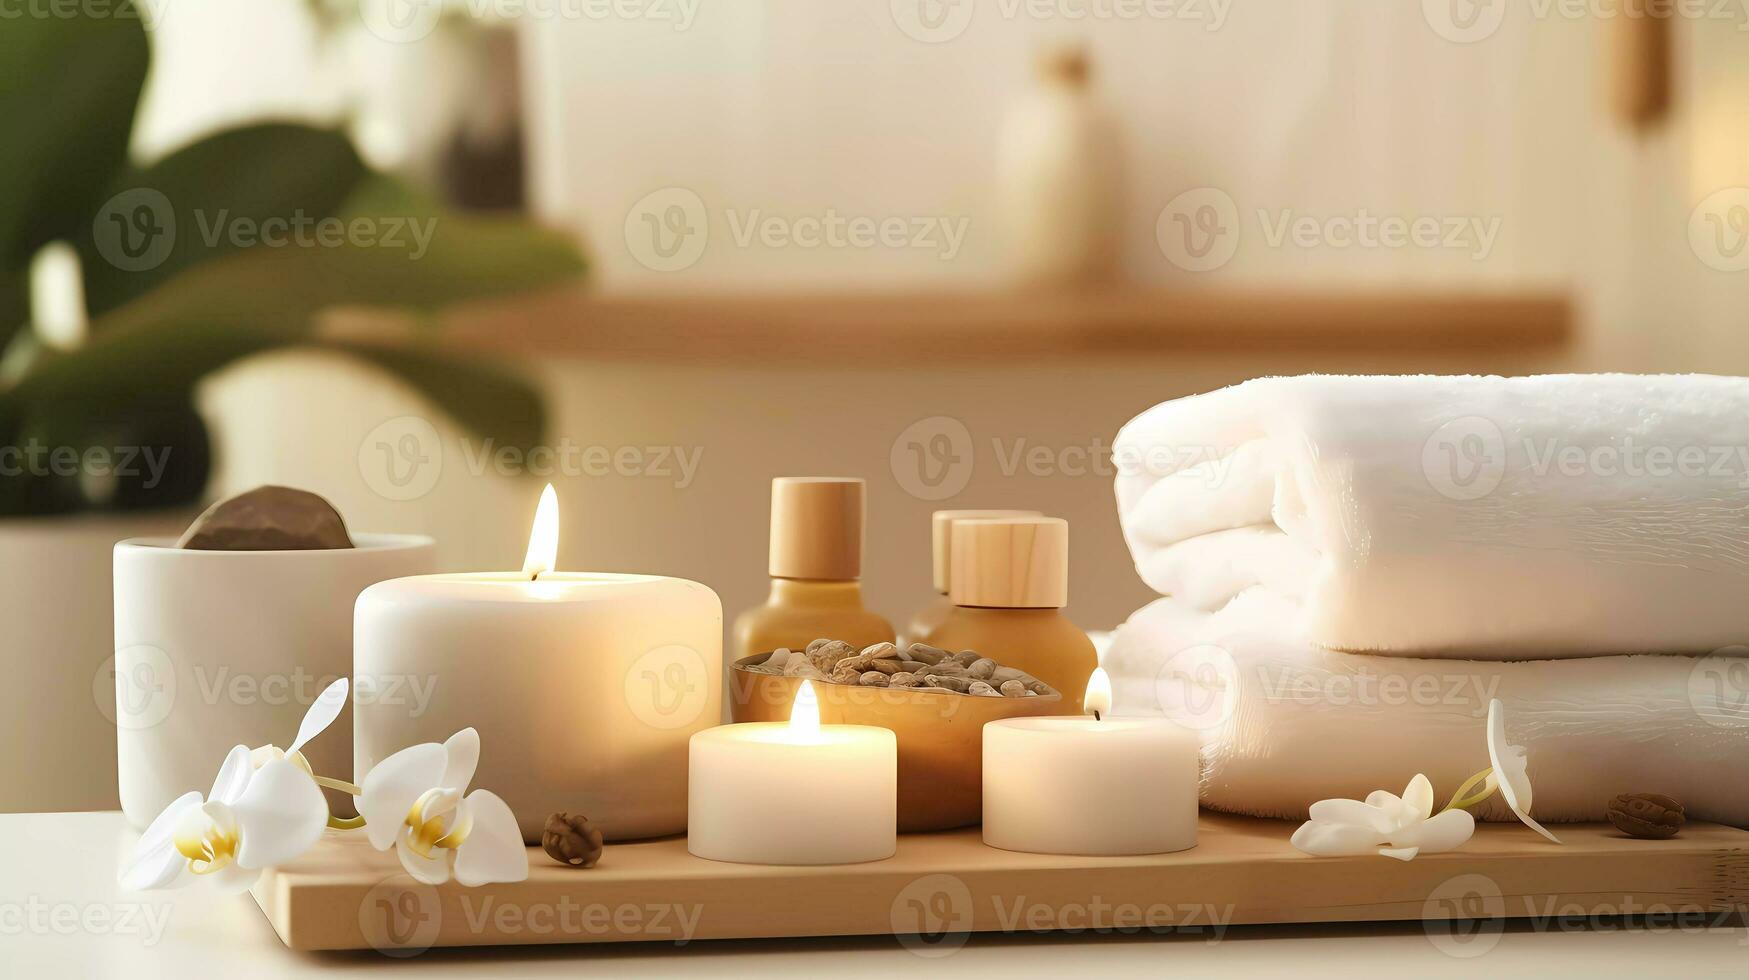 spa medeplichtig samenstelling reeks in dag spa hotel, schoonheid welzijn centrum. spa Product zijn geplaatst in luxe spa toevlucht kamer, klaar voor massage behandeling van professioneel onderhoud. foto